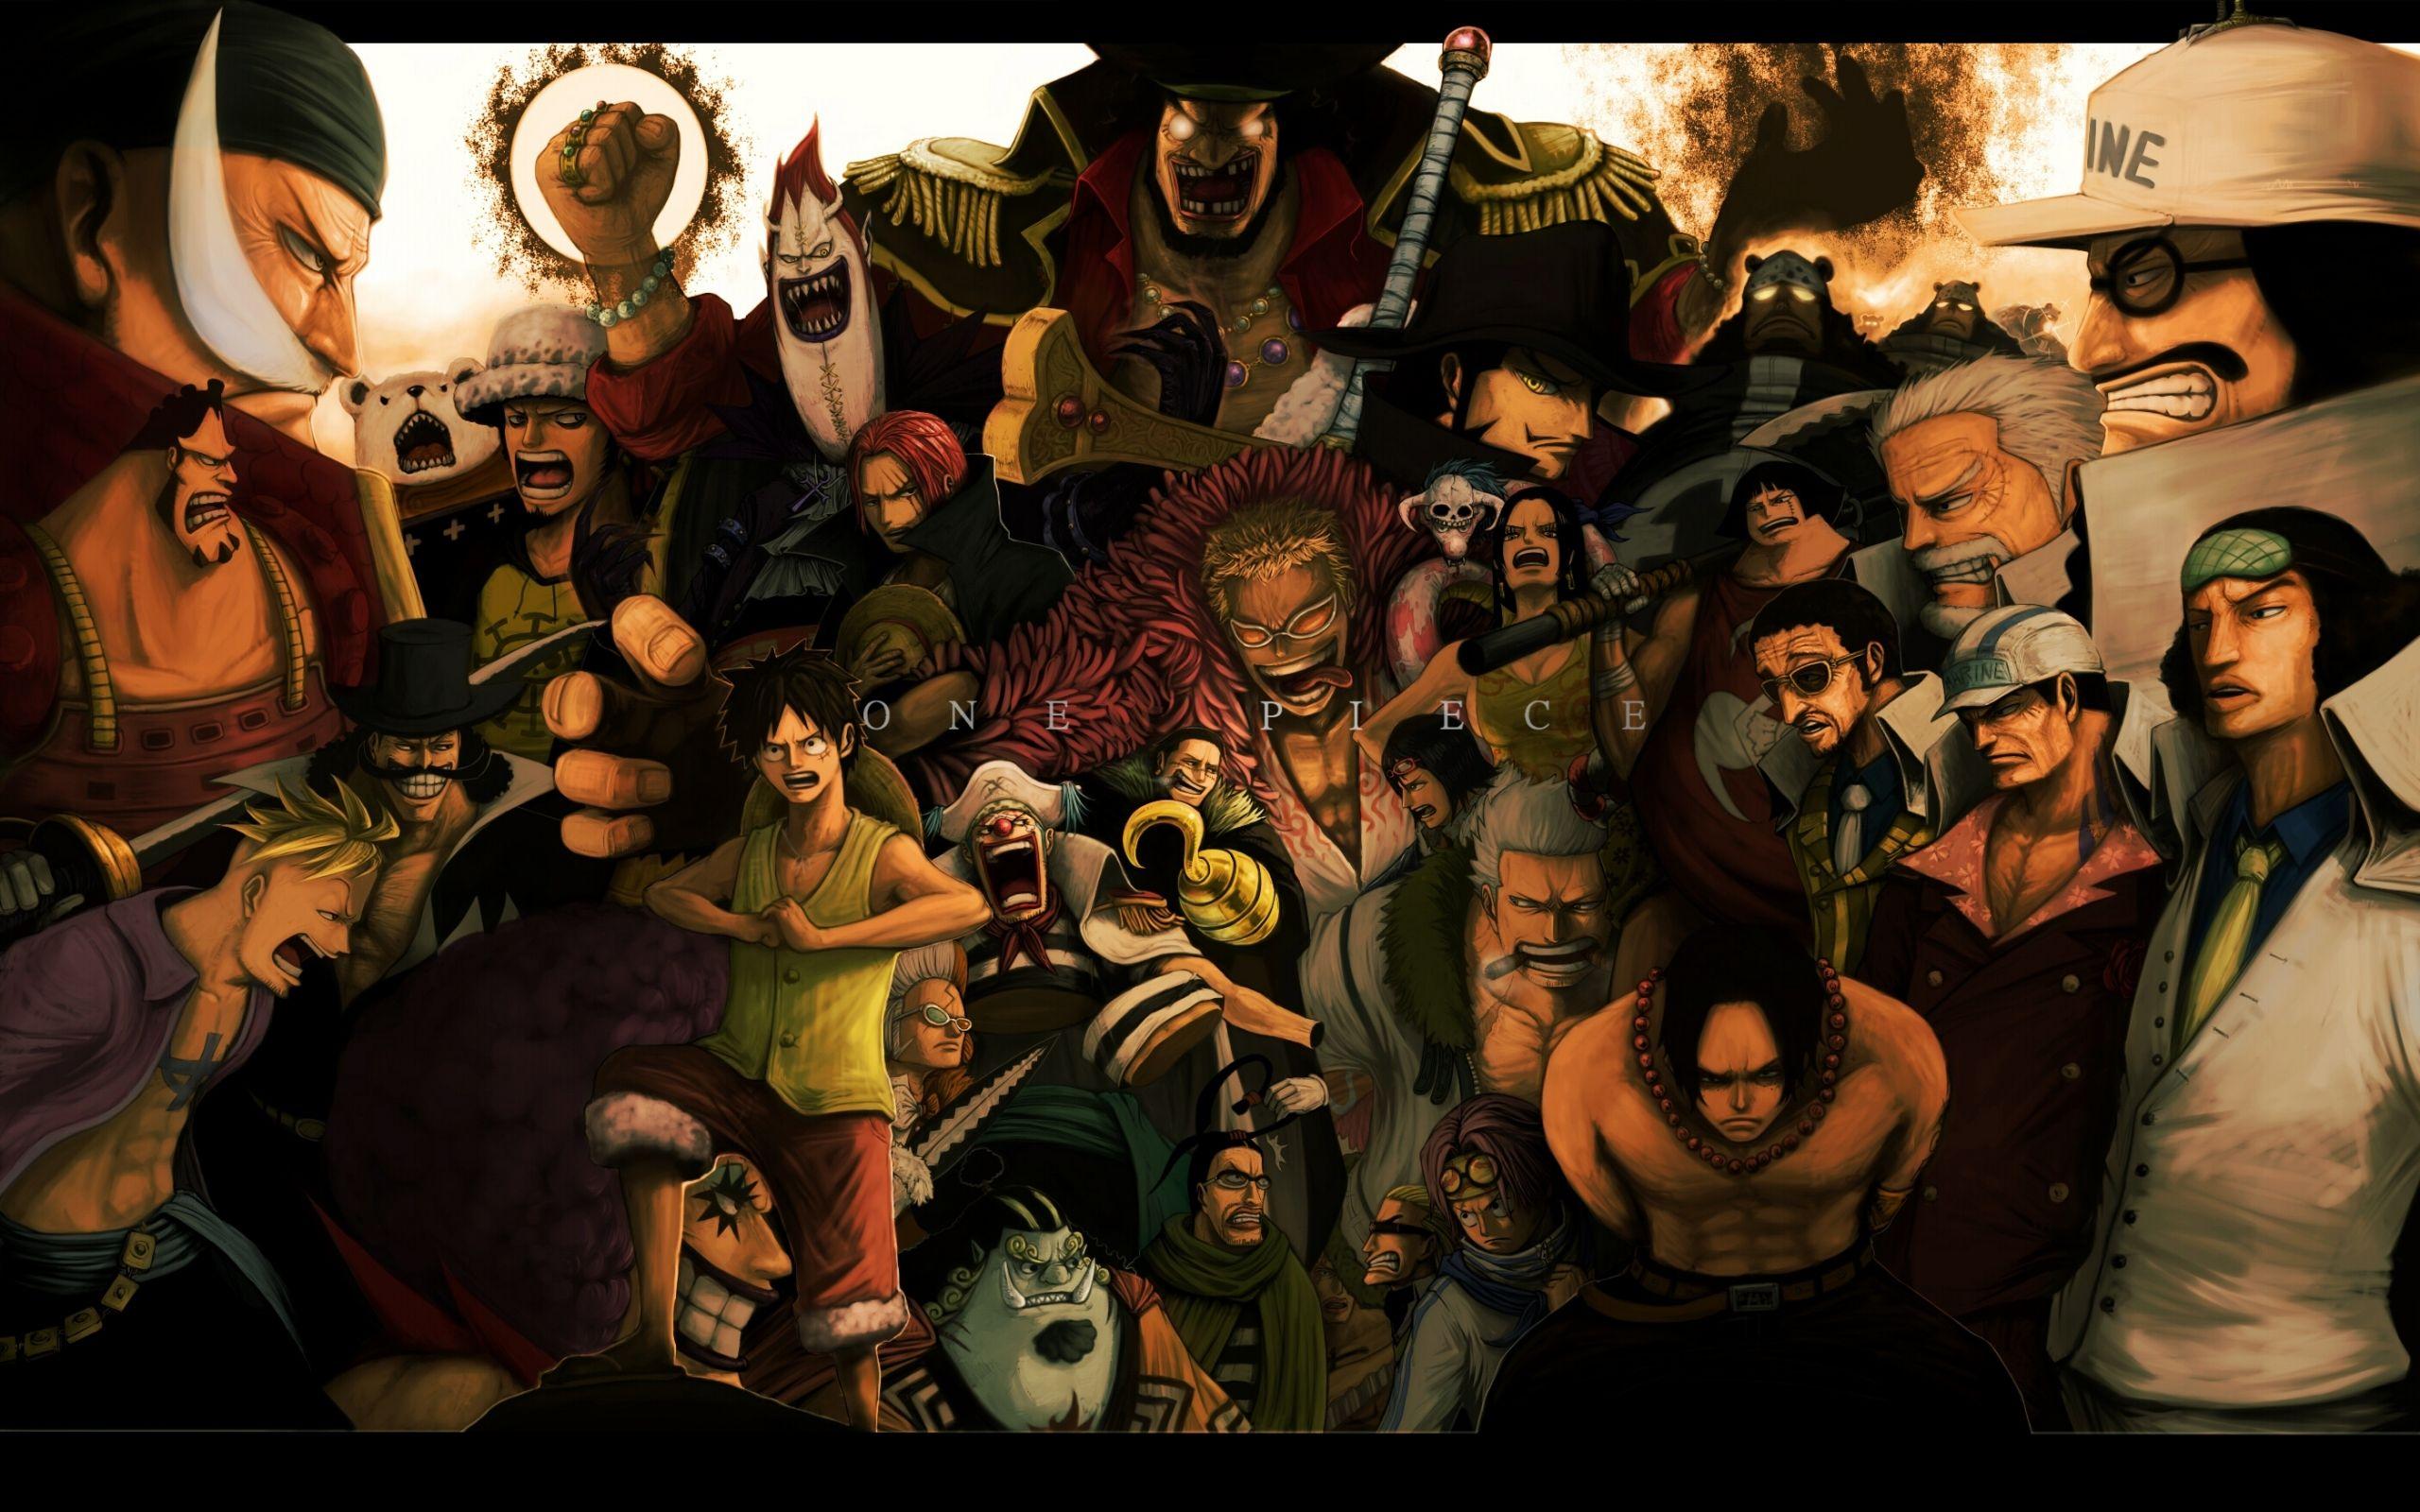 Hình nền One Piece 4K Vua Hải Tặc kinh điển cho anh em